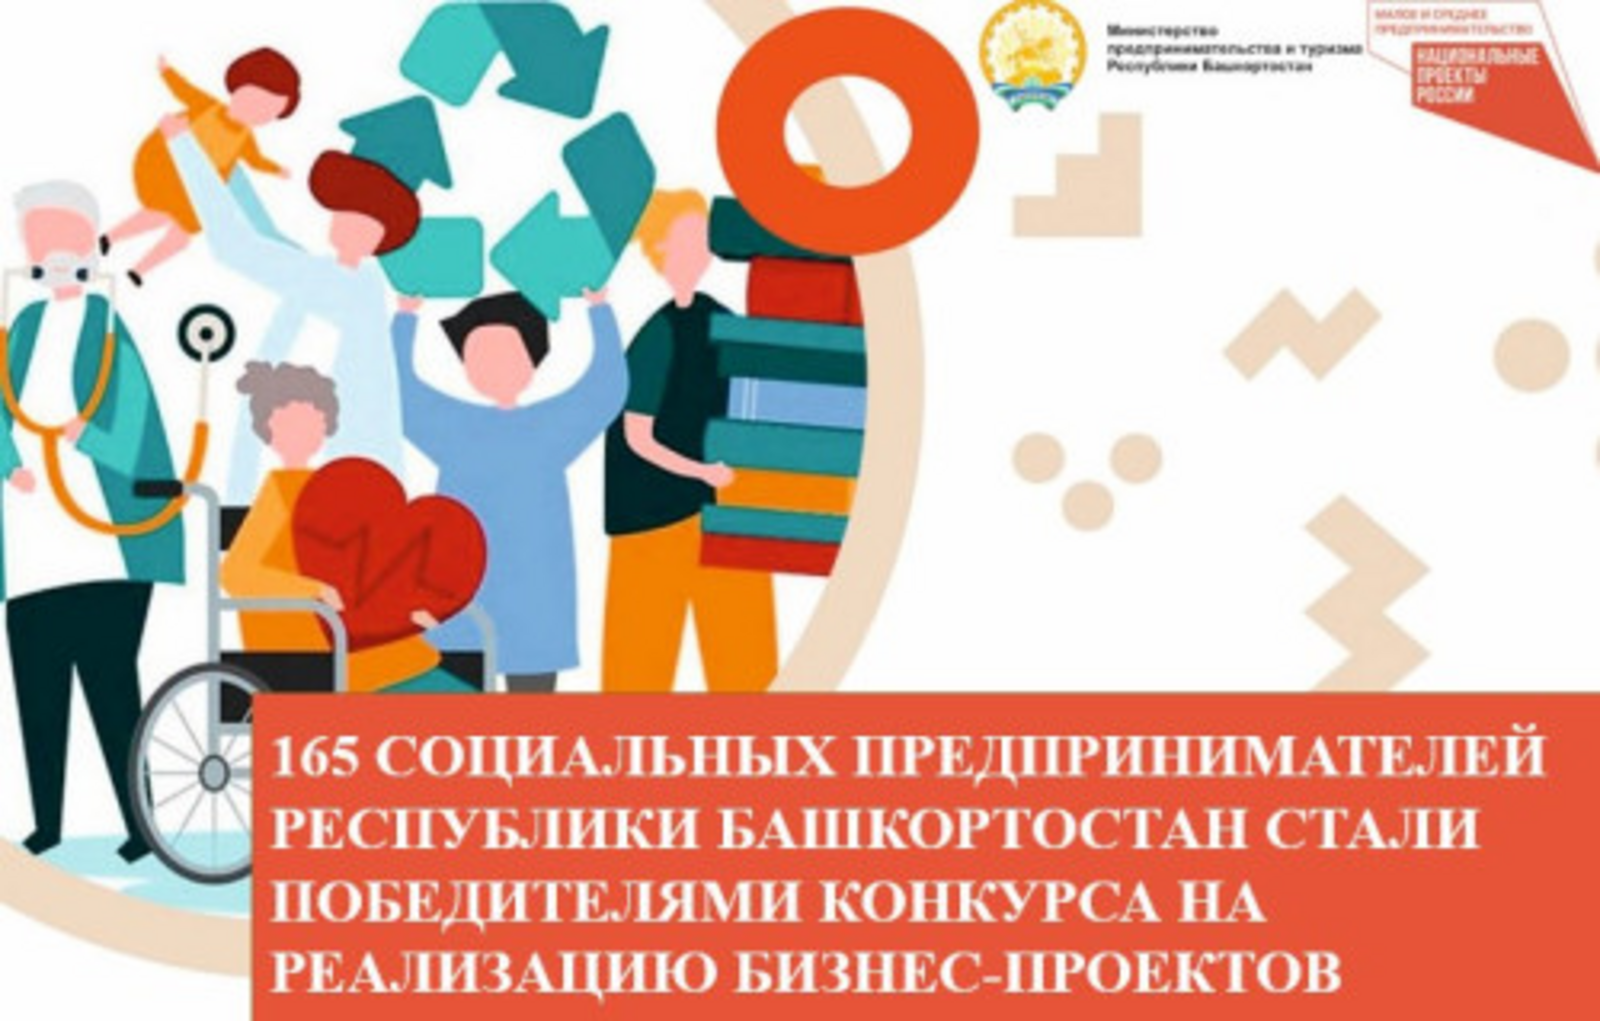 165 социальных предпринимателей Башкирии получили гранты на реализацию бизнес-проектов